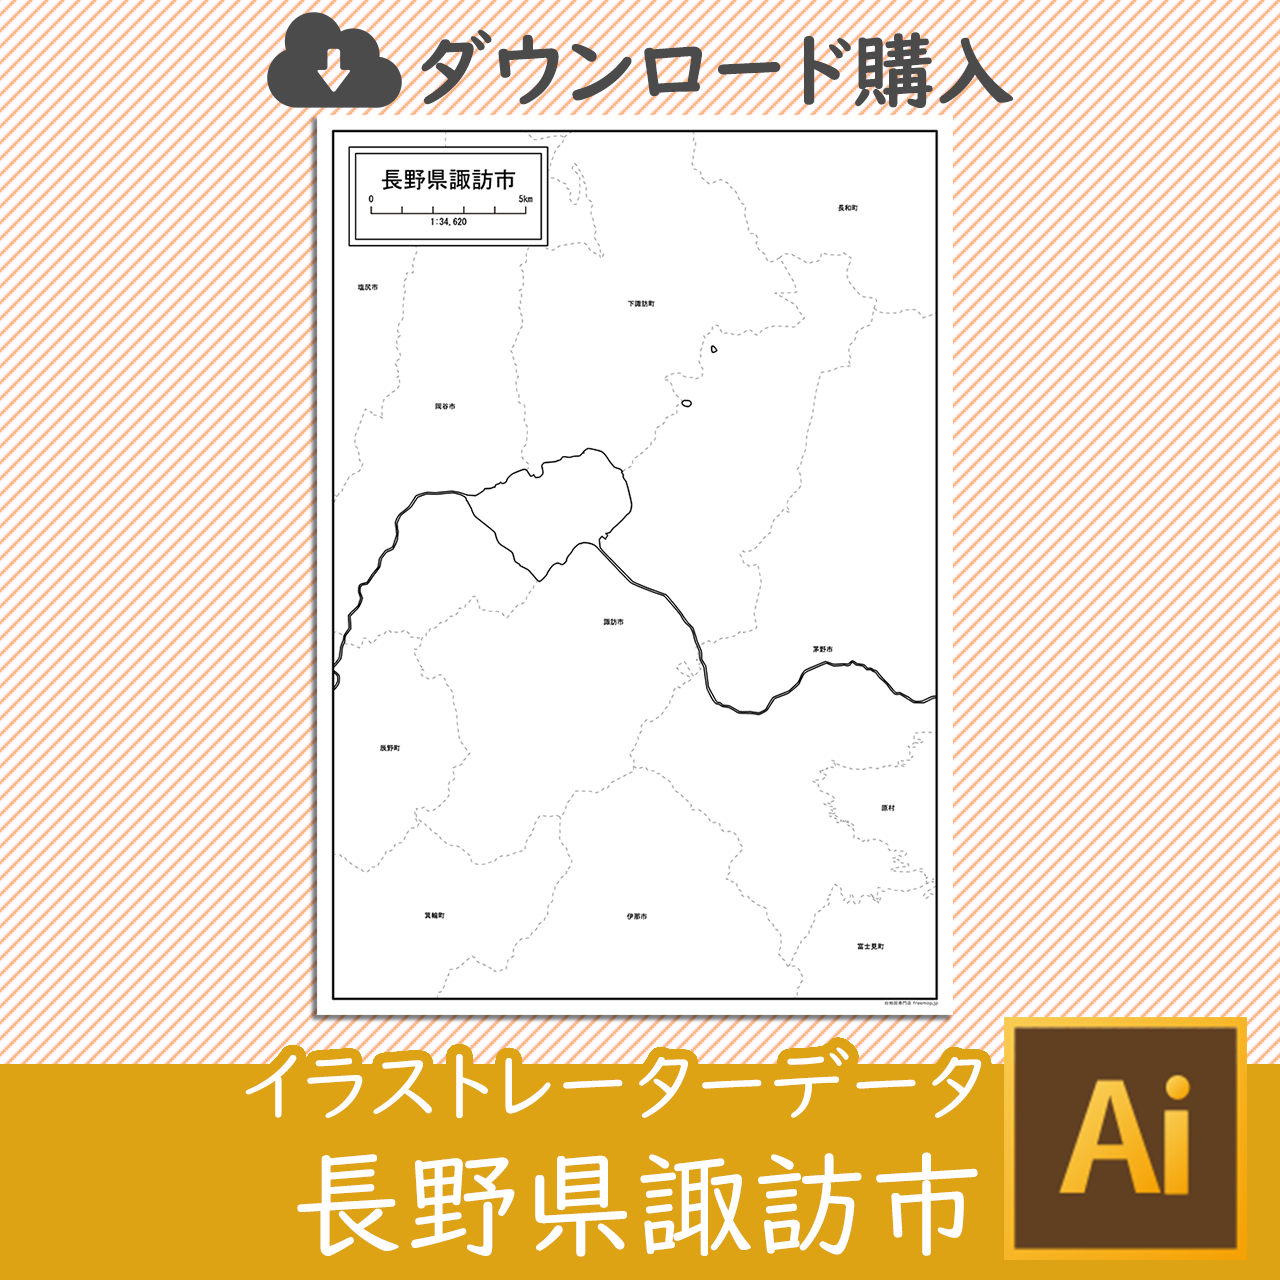 諏訪市のaiデータのサムネイル画像